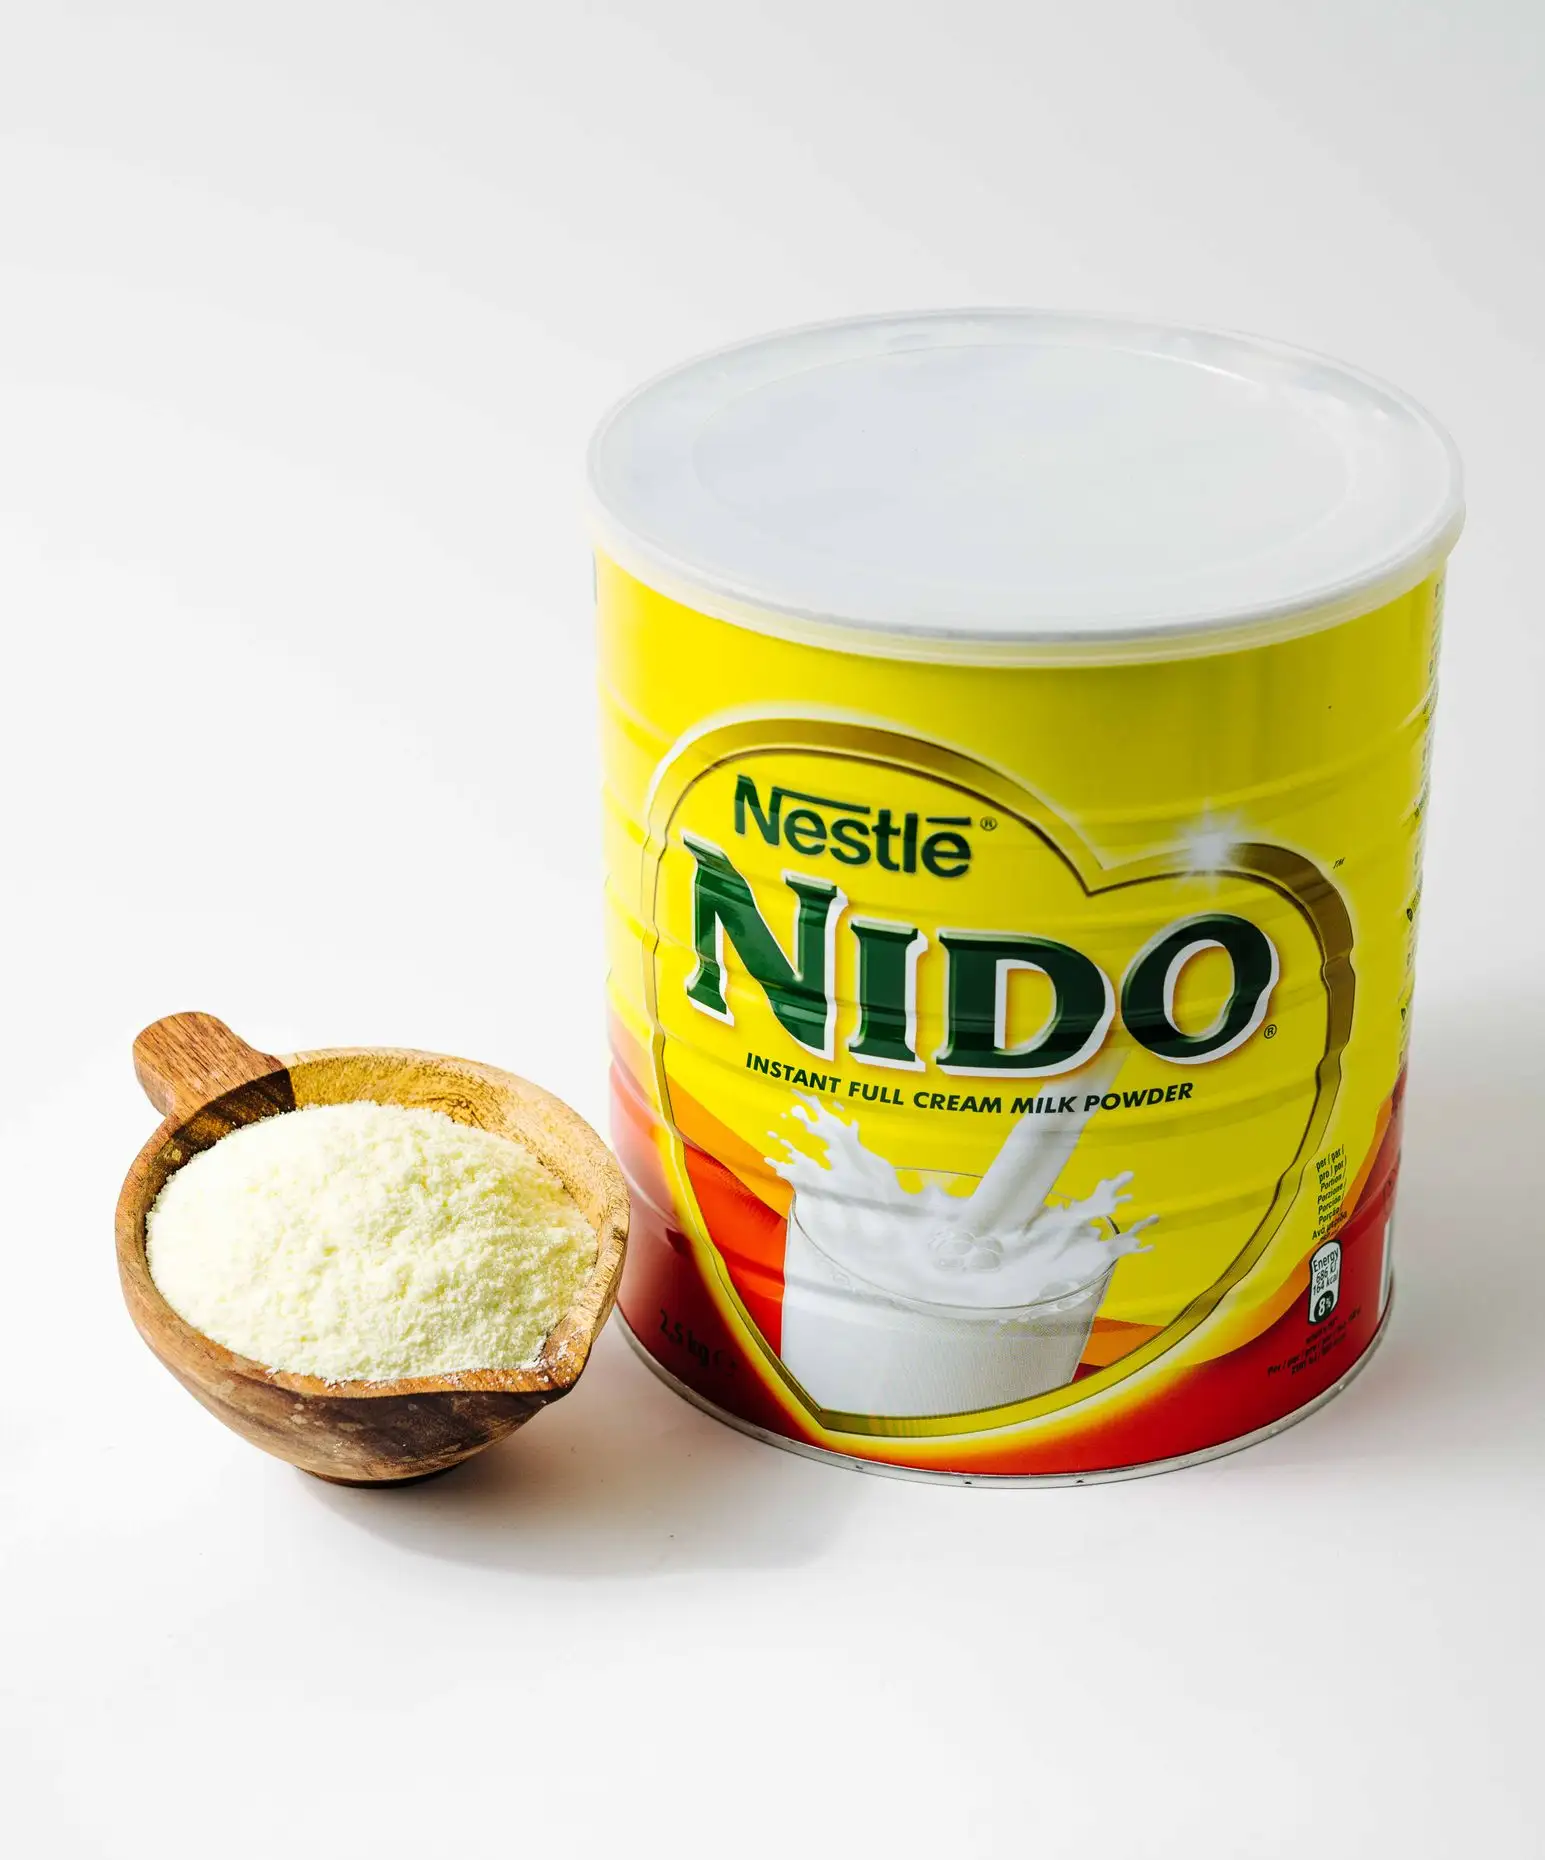 Susu bubuk Nido untuk dijual/Nestle Nido susu untuk dijual/Nido susu bubuk 400g untuk penjualan ekspor